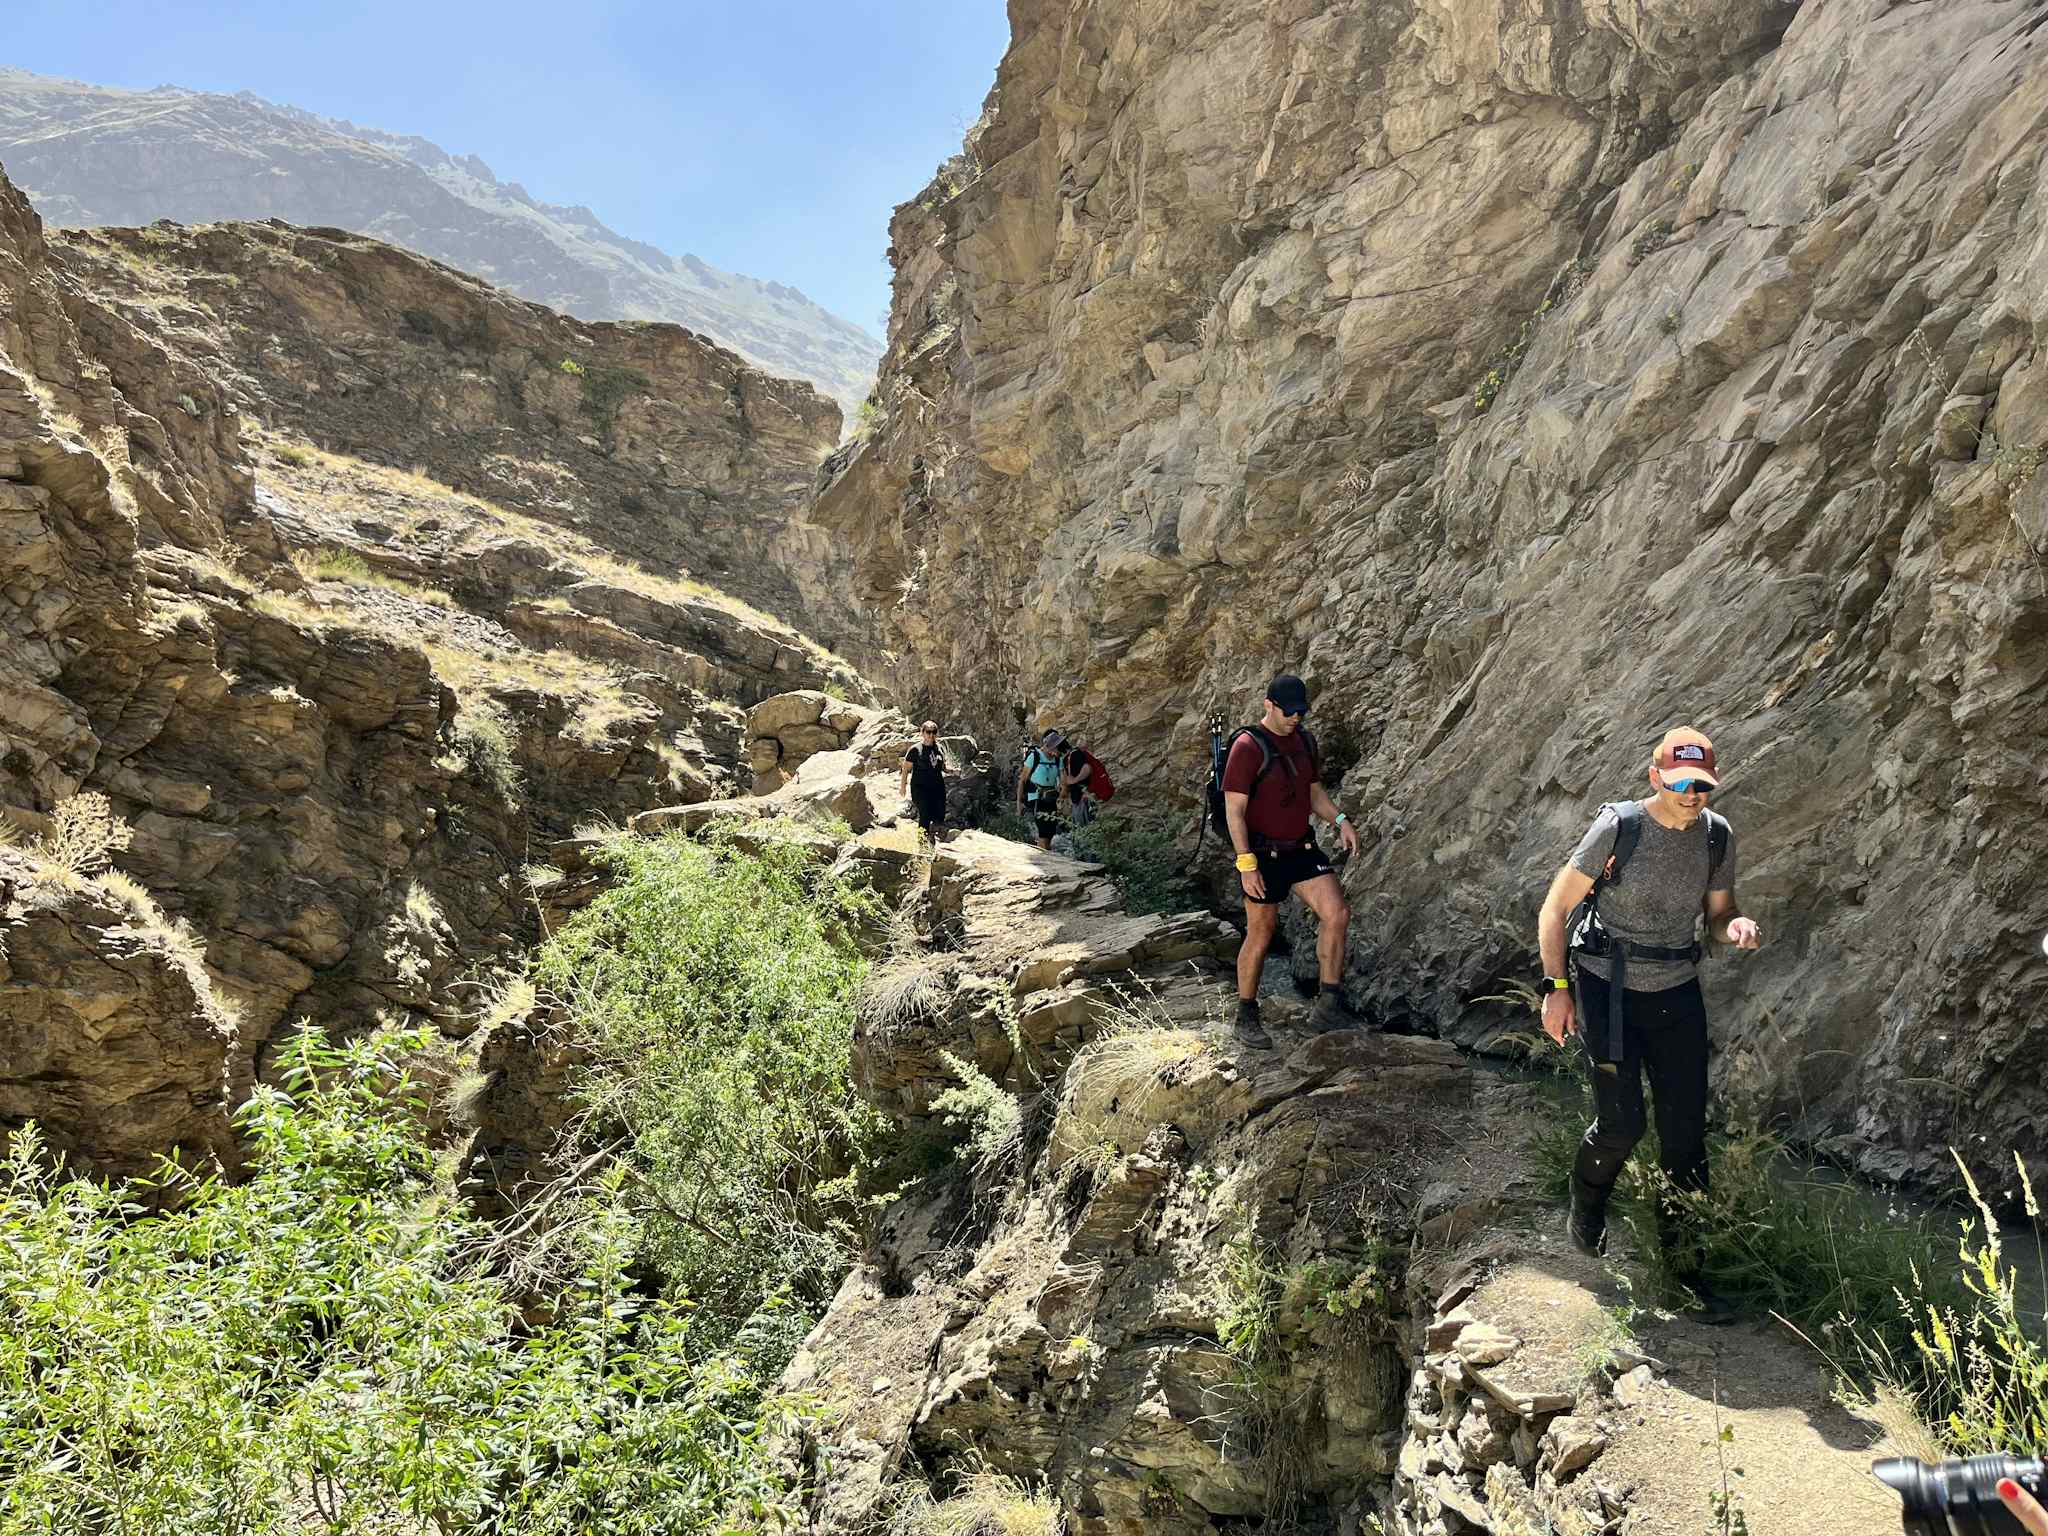 Hike in Khorog, Tajikistan. Photo: Host/Orom Travel